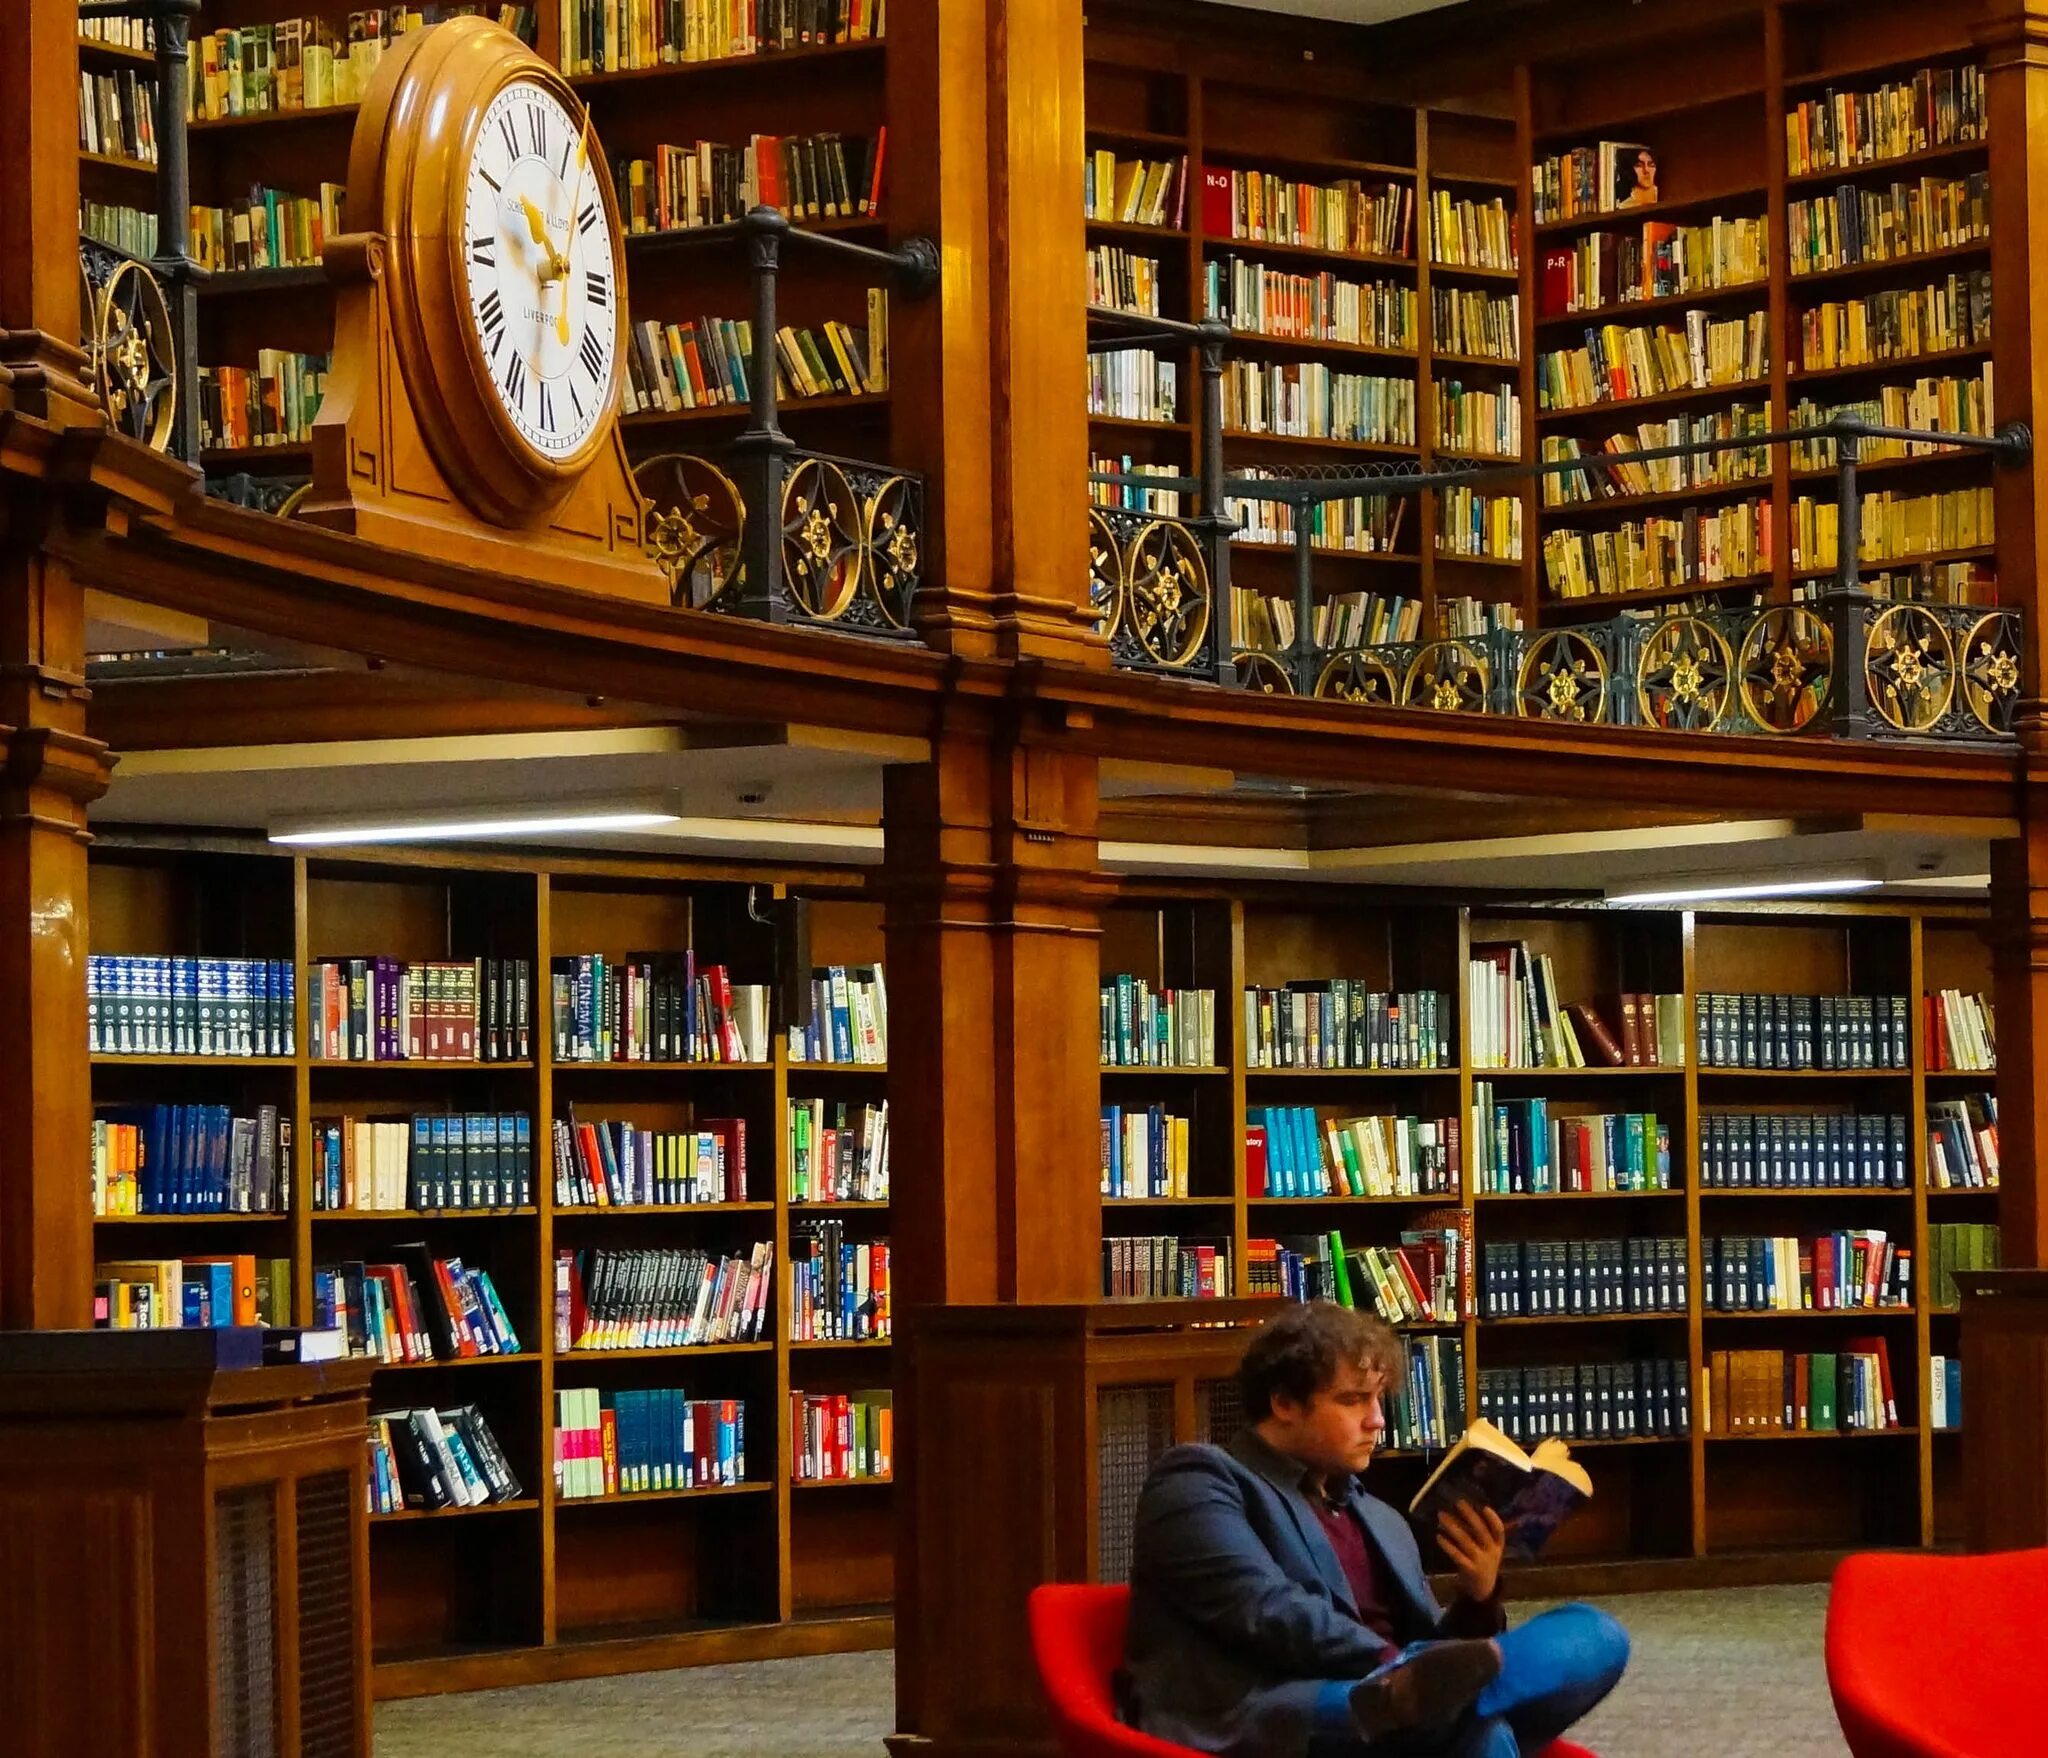 Bookworm library. Библиотека. Библиотека будущего. Библиотека картинки. Современный читальный зал библиотеки.